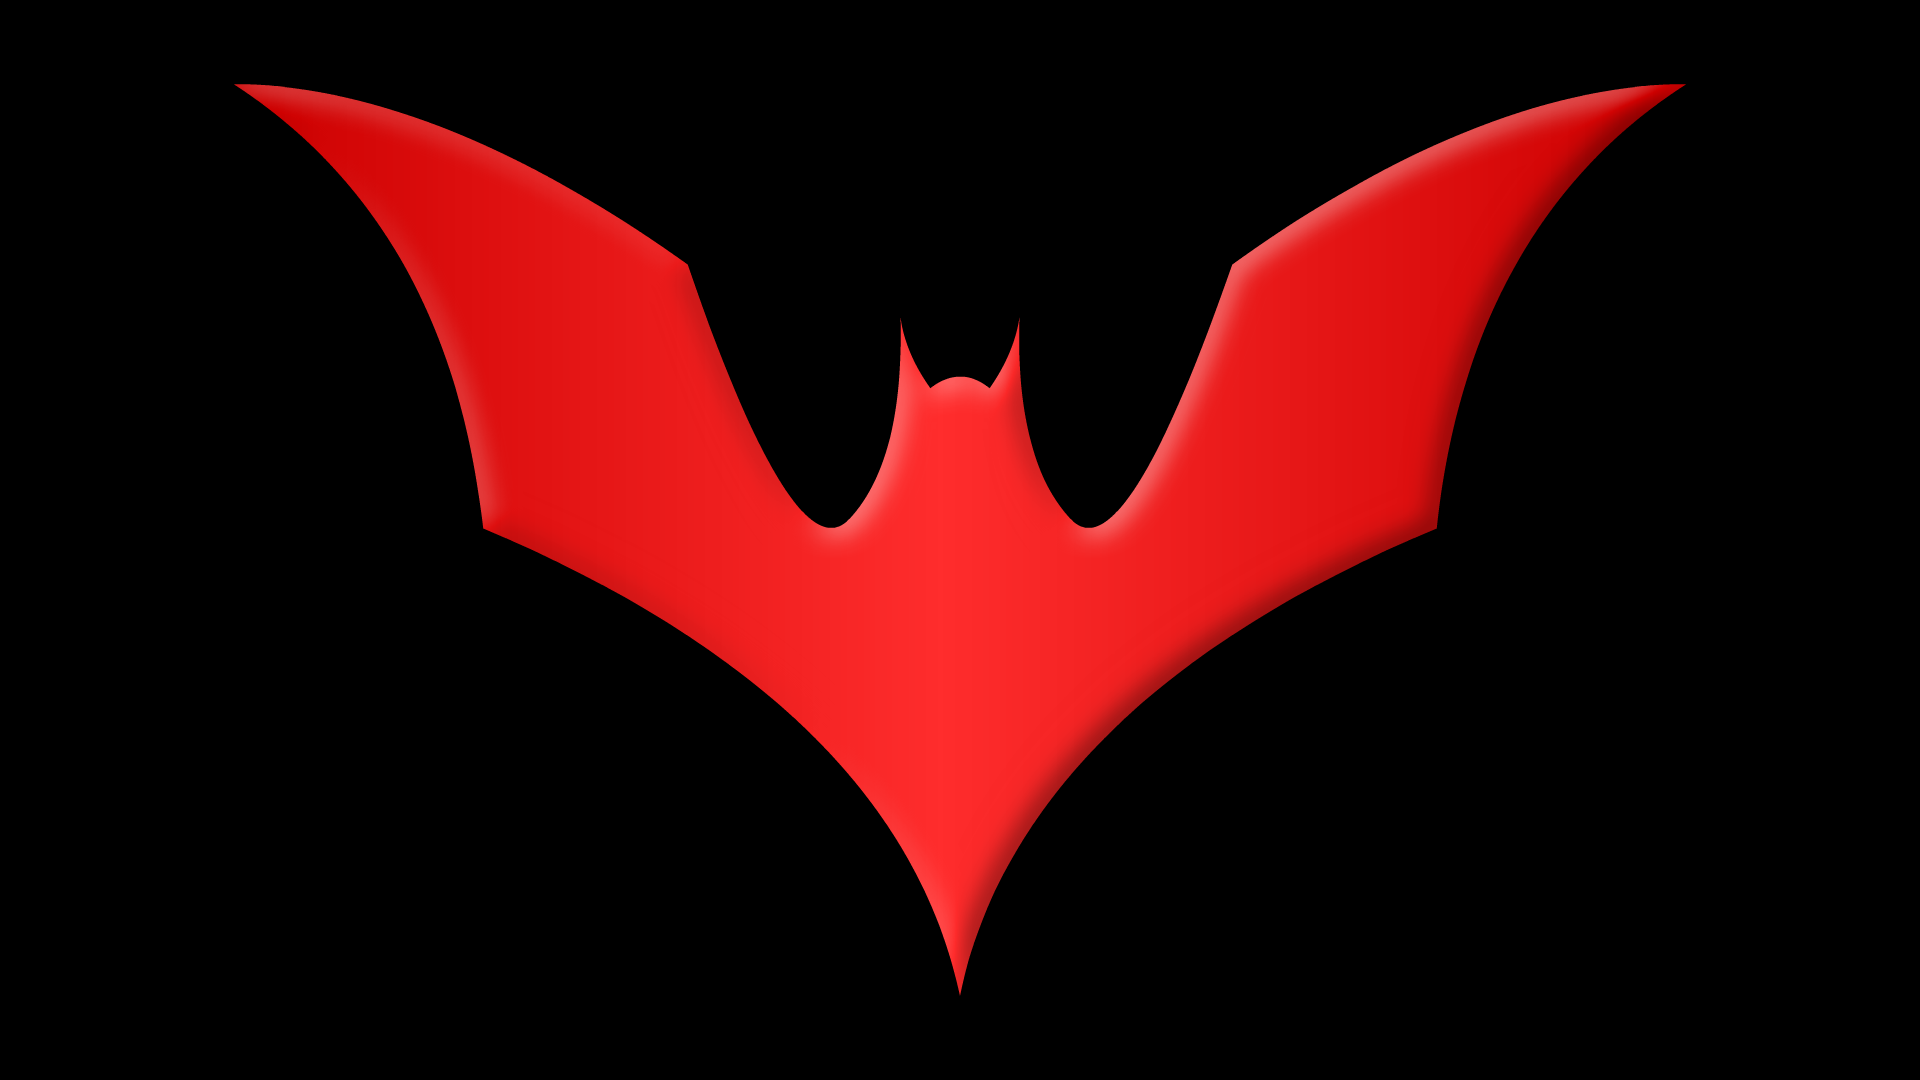 Comics Batman Beyond HD Wallpaper | Background Image